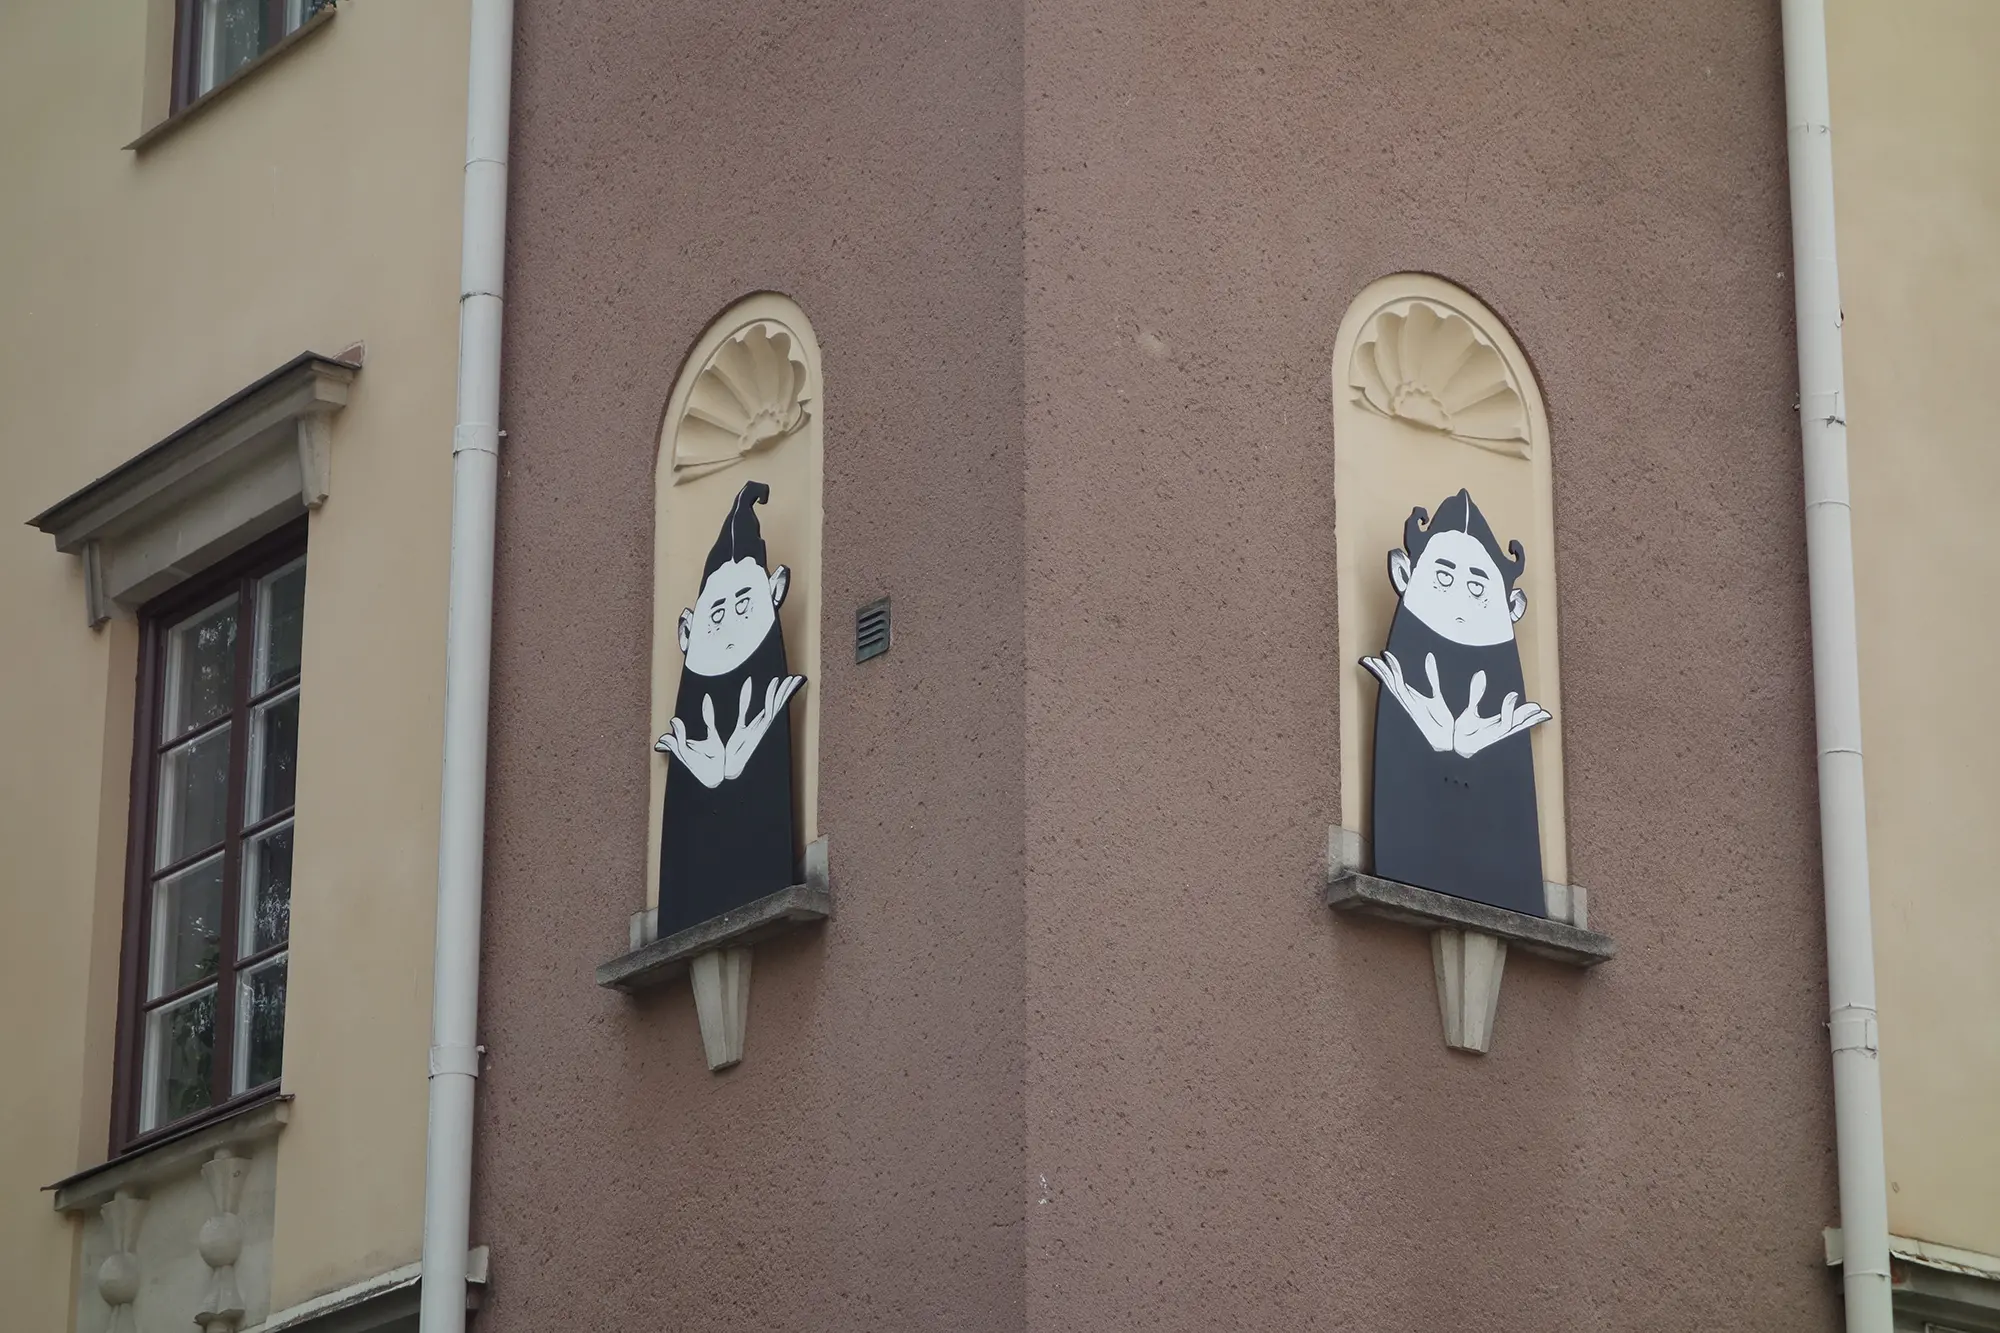 Högt upp på utsidan av en husfasad syns två stora illustrationer i seriestil föreställande figurer i svartvitt på var sin vägg. Deras ansiktsuttryck är neutrala och de har stora händer riktade uppåt.